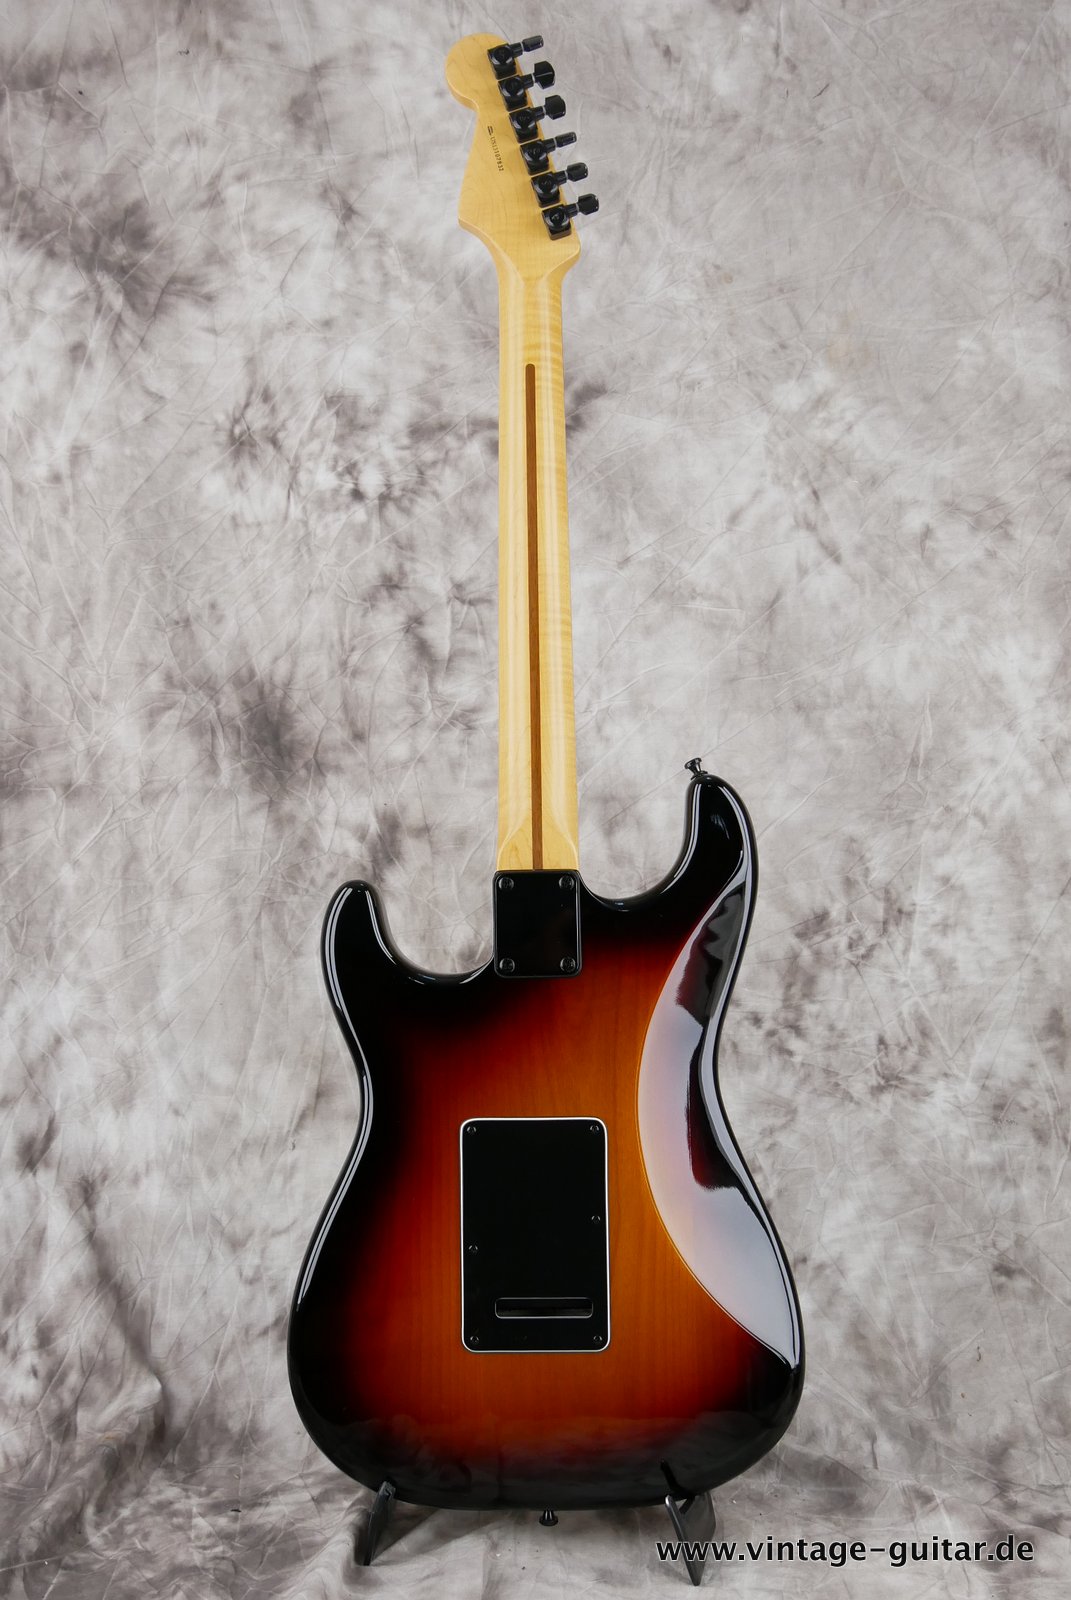 img/vintage/4765/Fender-Stratocaster-2014-US-Standard-black-hardware-003.JPG